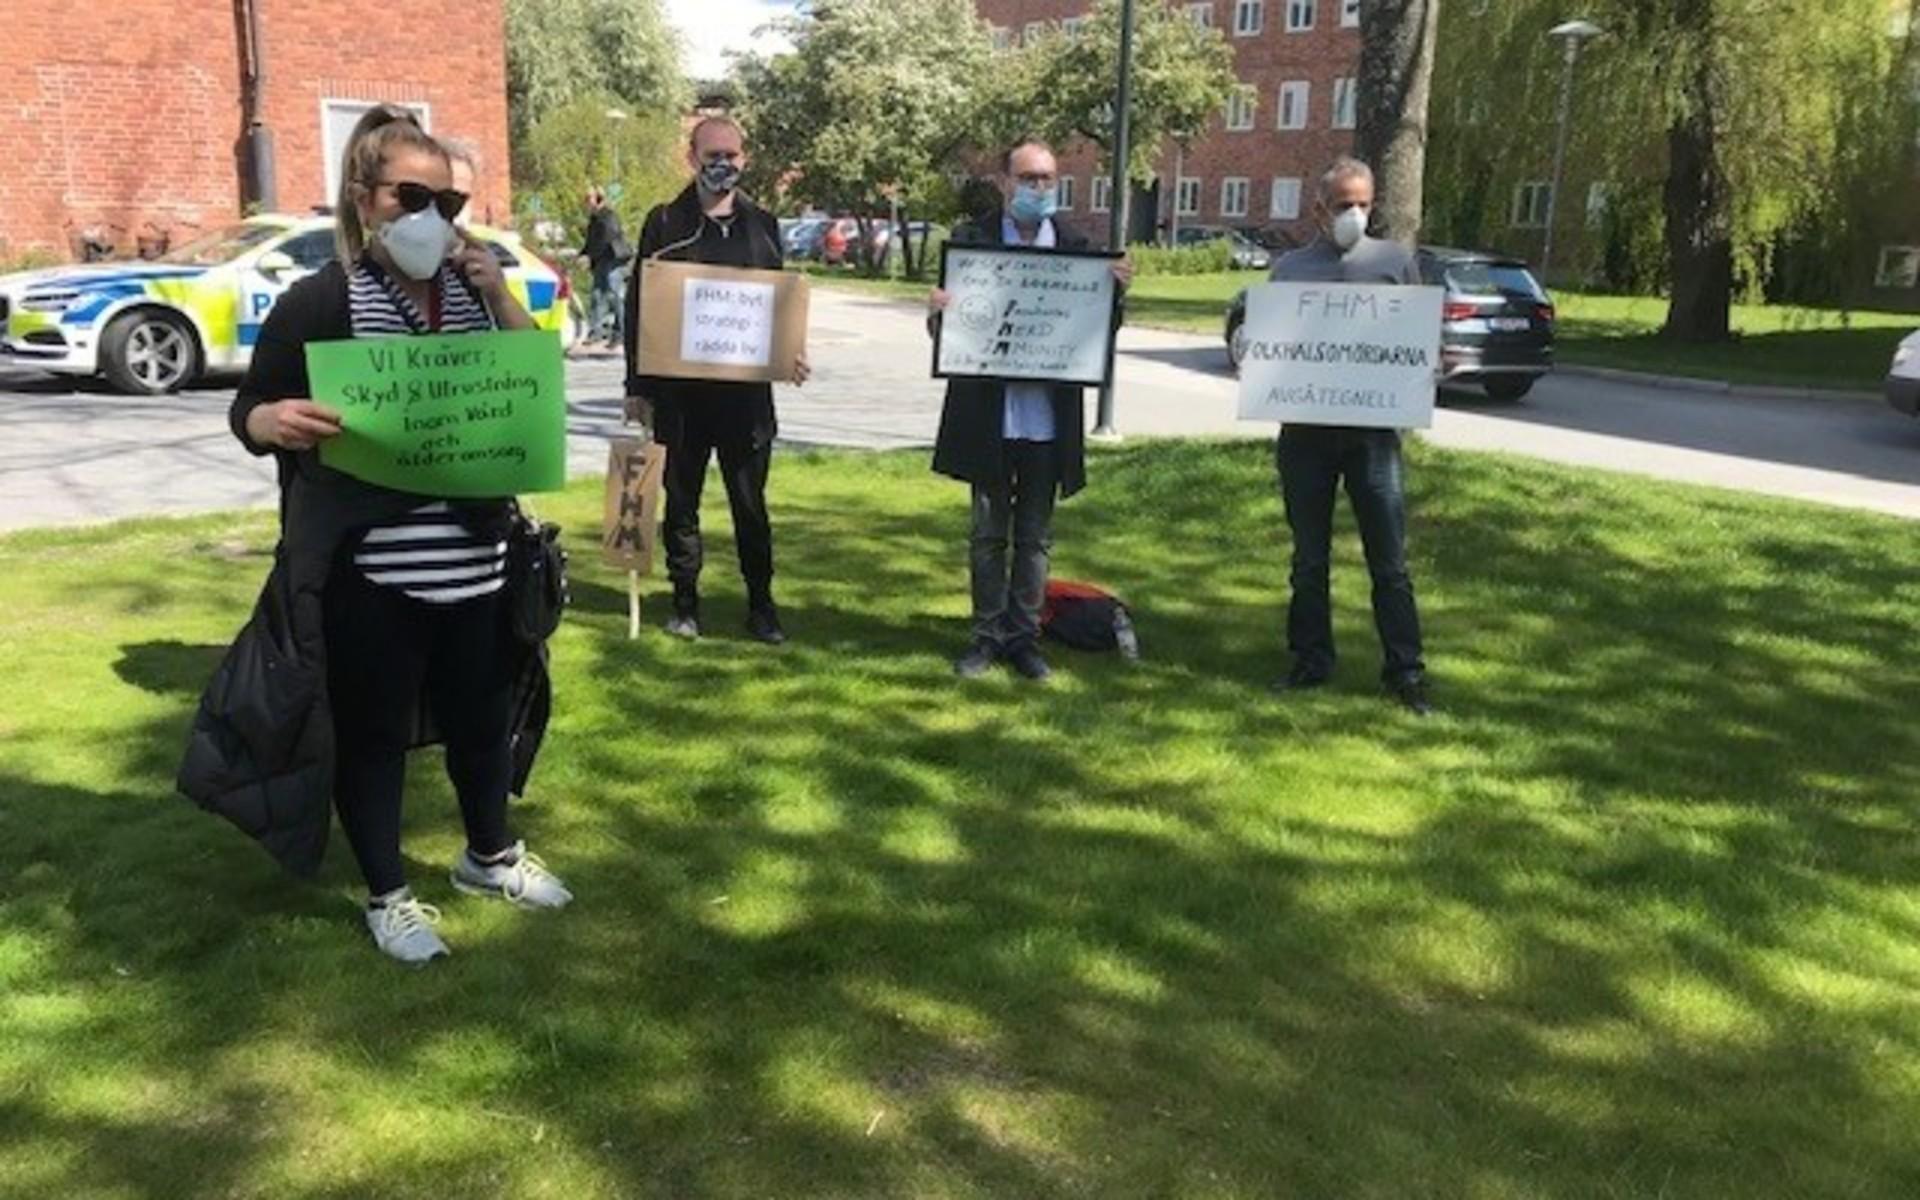 Demonstranterna som protesterar utanför Folkhälsomyndigheten är missnöjda med den svenska coronastrategin.